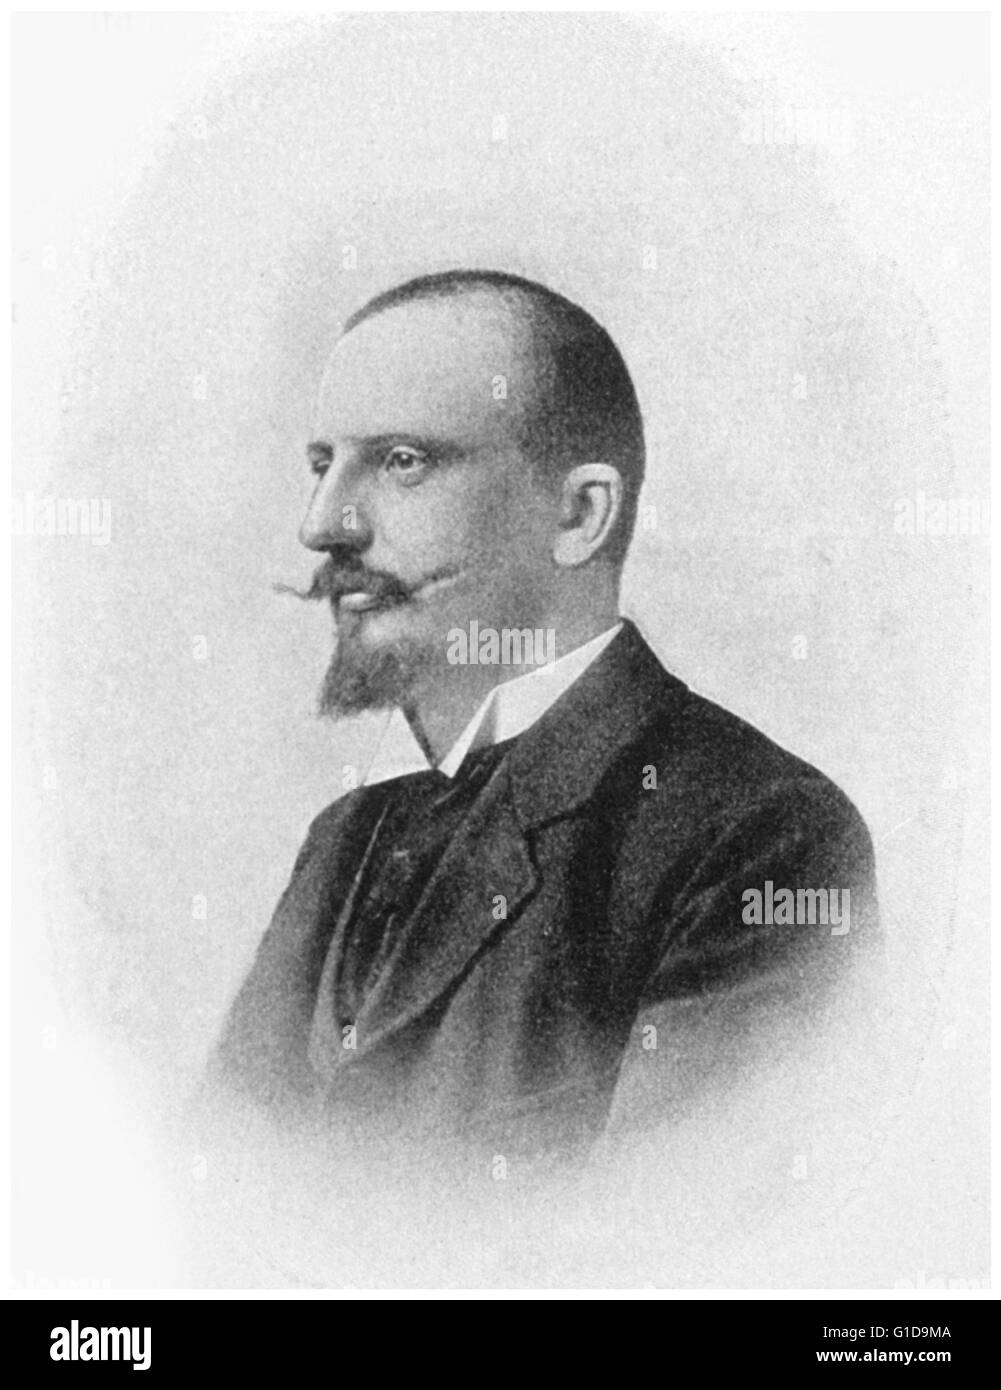 Le Dr Martin Bachmann, médecin bactériologiste et pour l'expédition de Valdivia, est mort le 14 janvier 1899 Banque D'Images